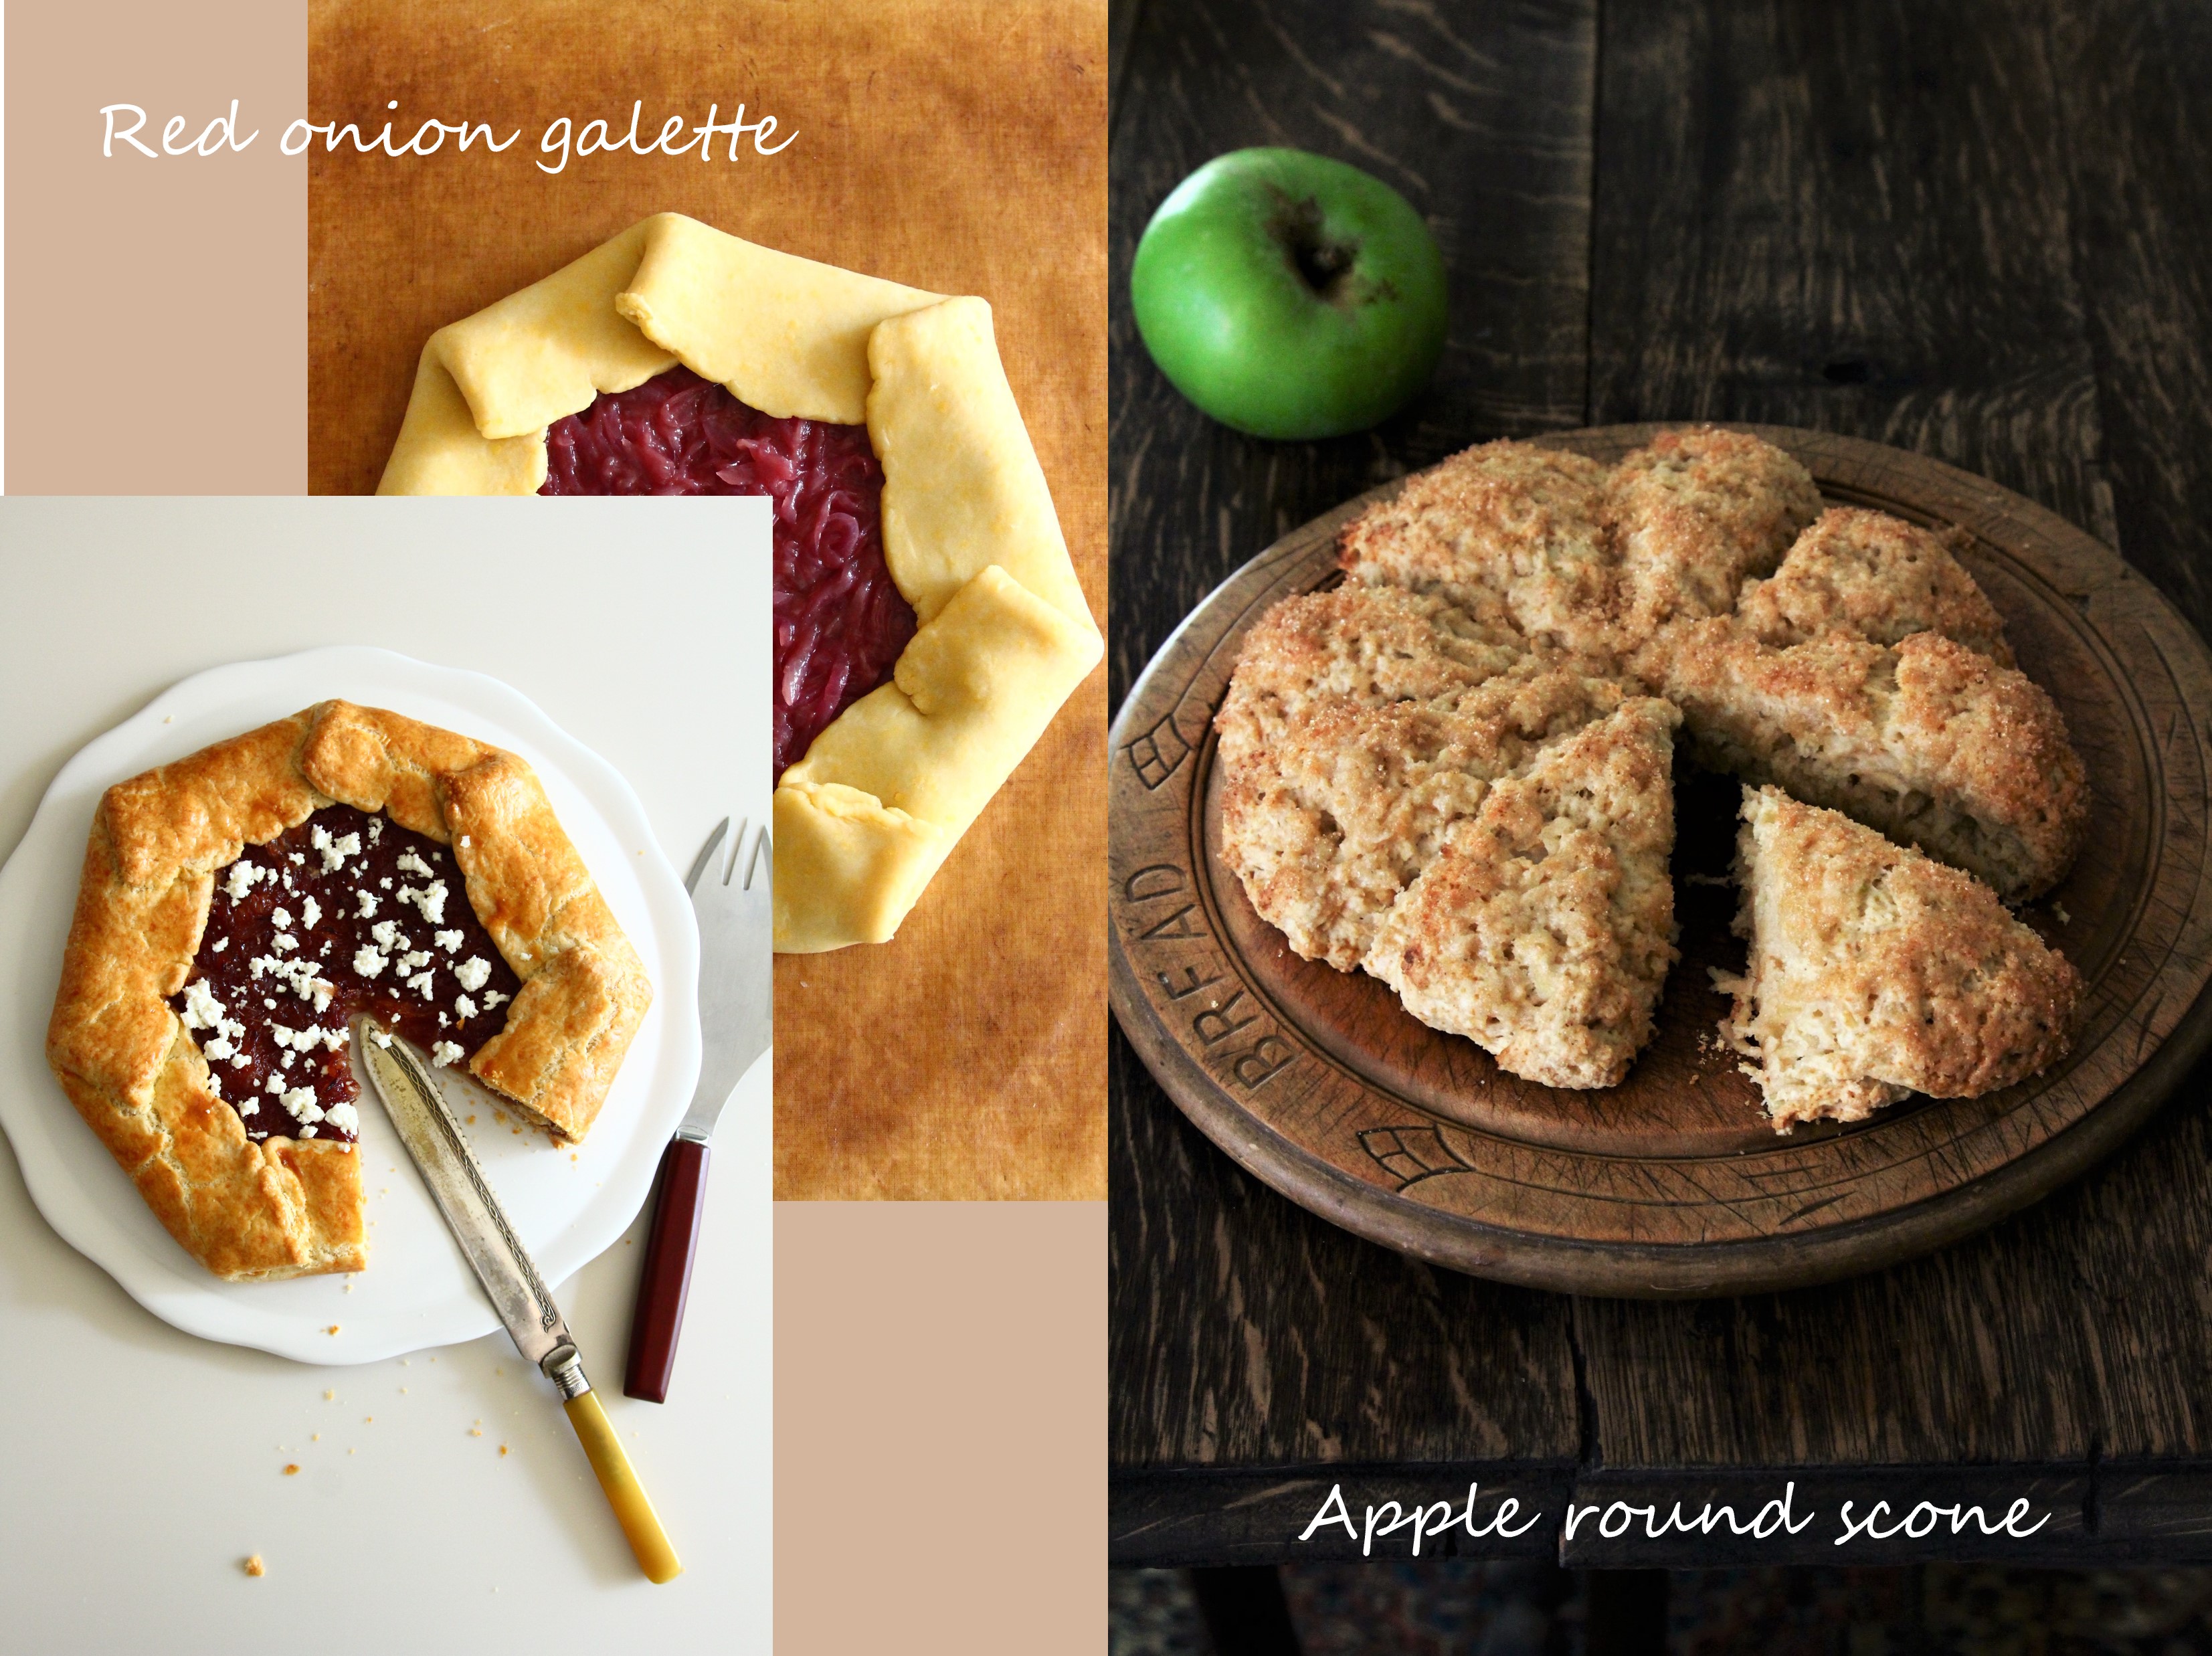 202１年 10月 ＜Red onion galette & Apple round scone＞